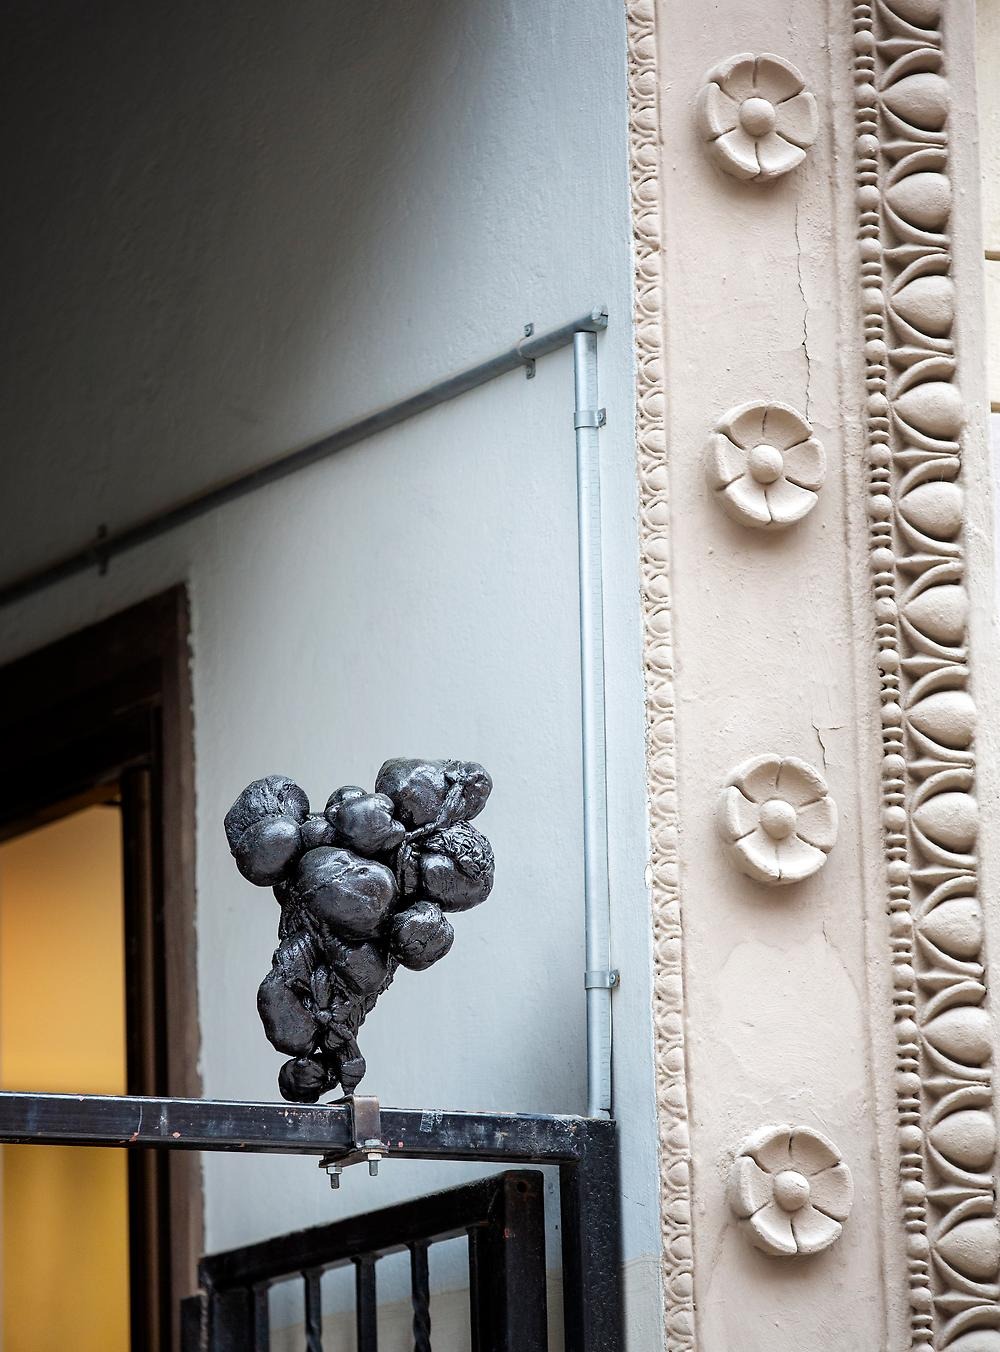 Ett av konstverken som är placerade i stadsrummet på hög höjd, objektet balanserar på en smal metallstång. Konstverket består av hårt sammanknuten svart textil som utgör skulpturen. Skulpturen är mellan 20-30 cm hög.